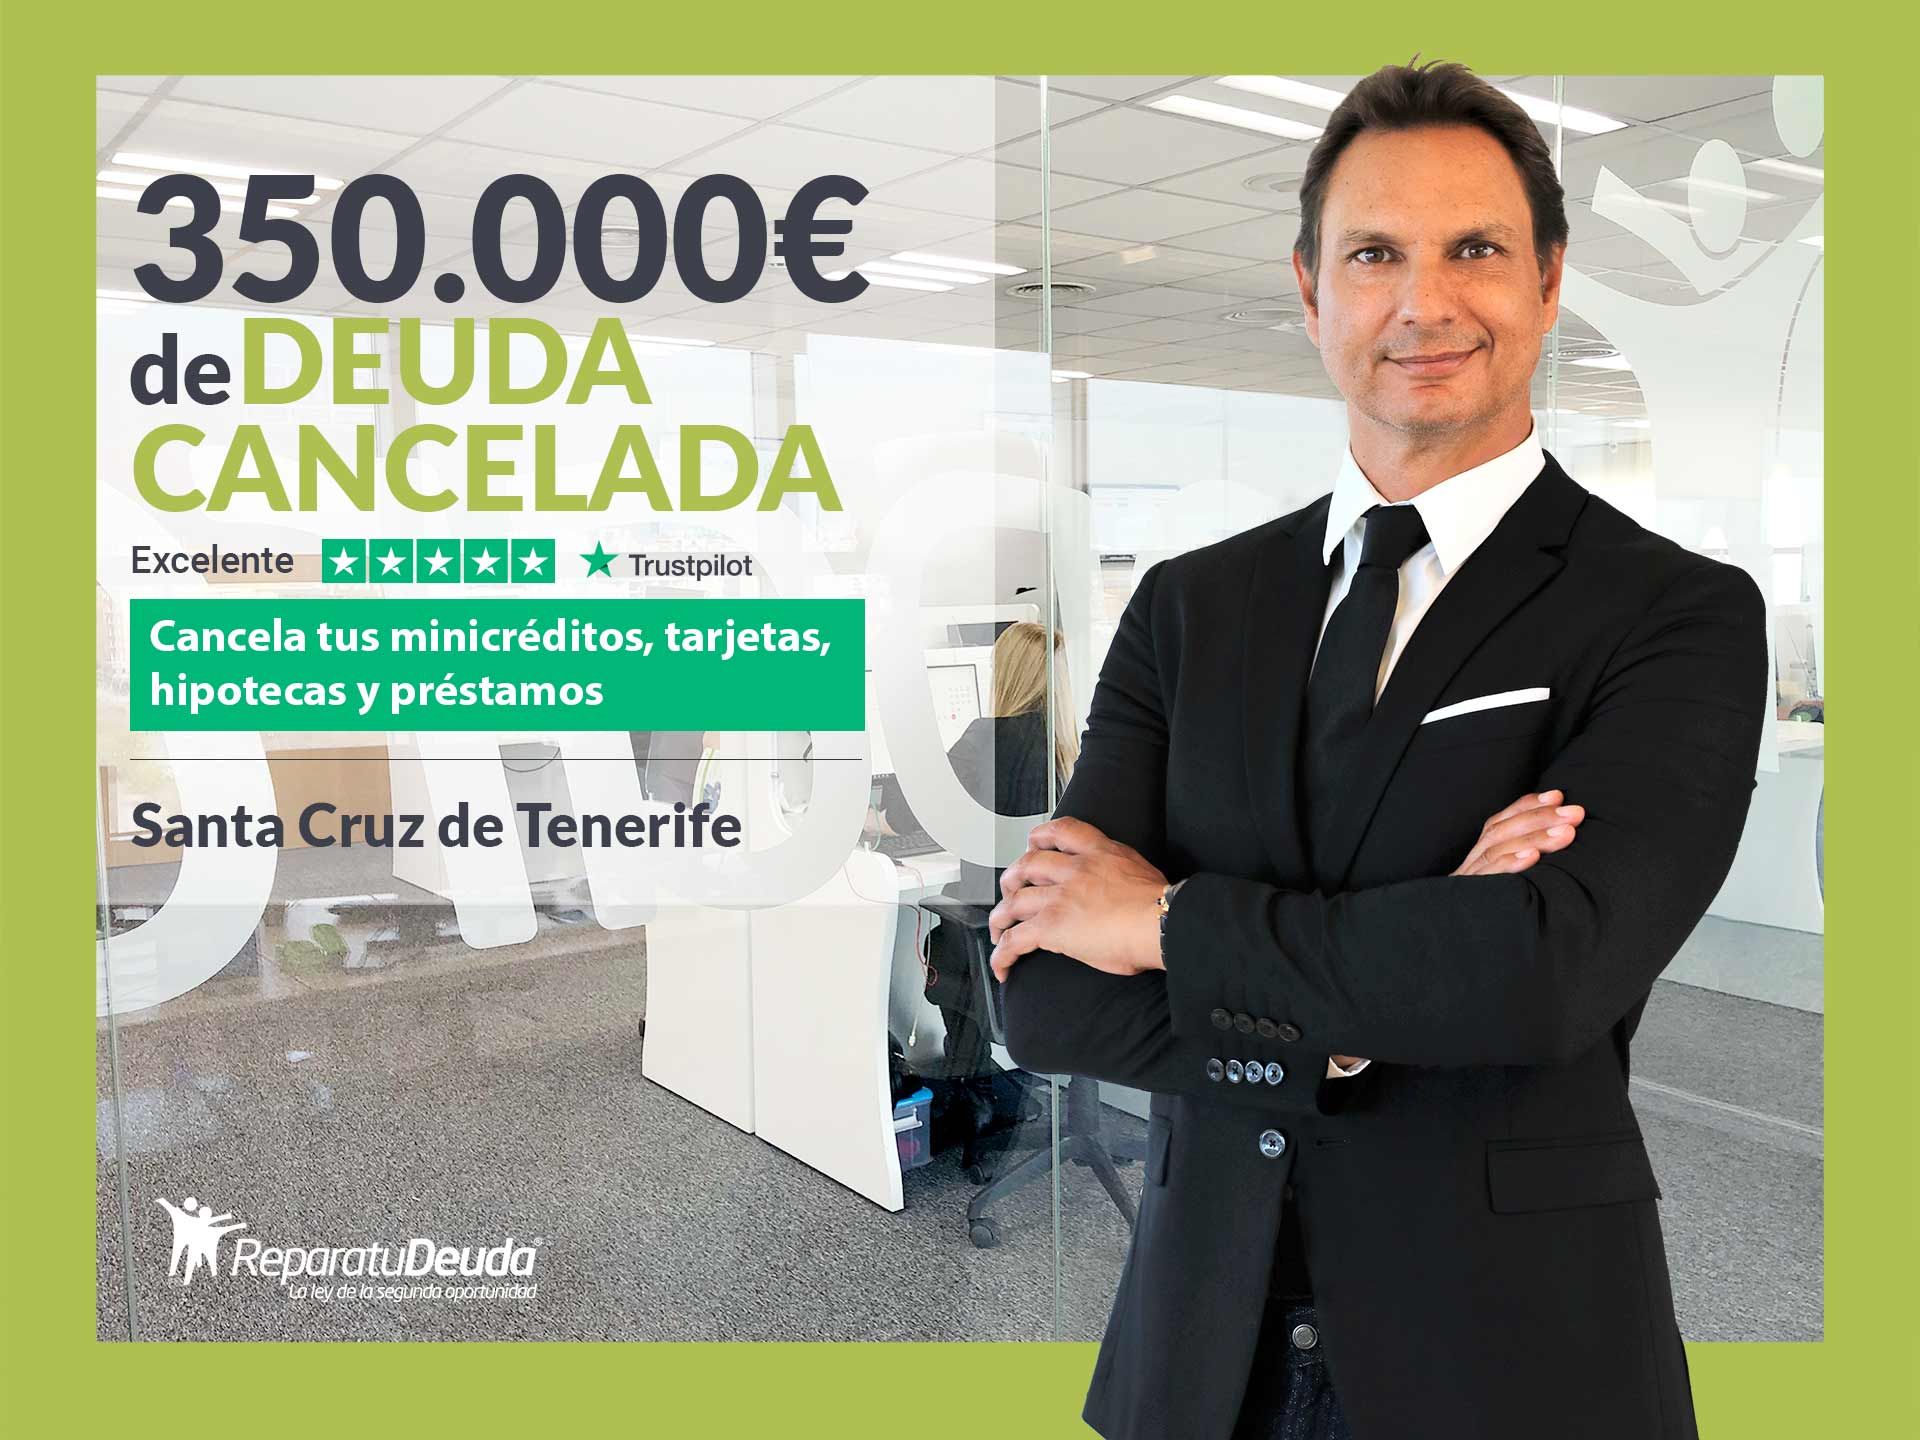 Repara tu Deuda Abogados cancela 350.000? en Tenerife (Canarias) con la Ley de Segunda Oportunidad